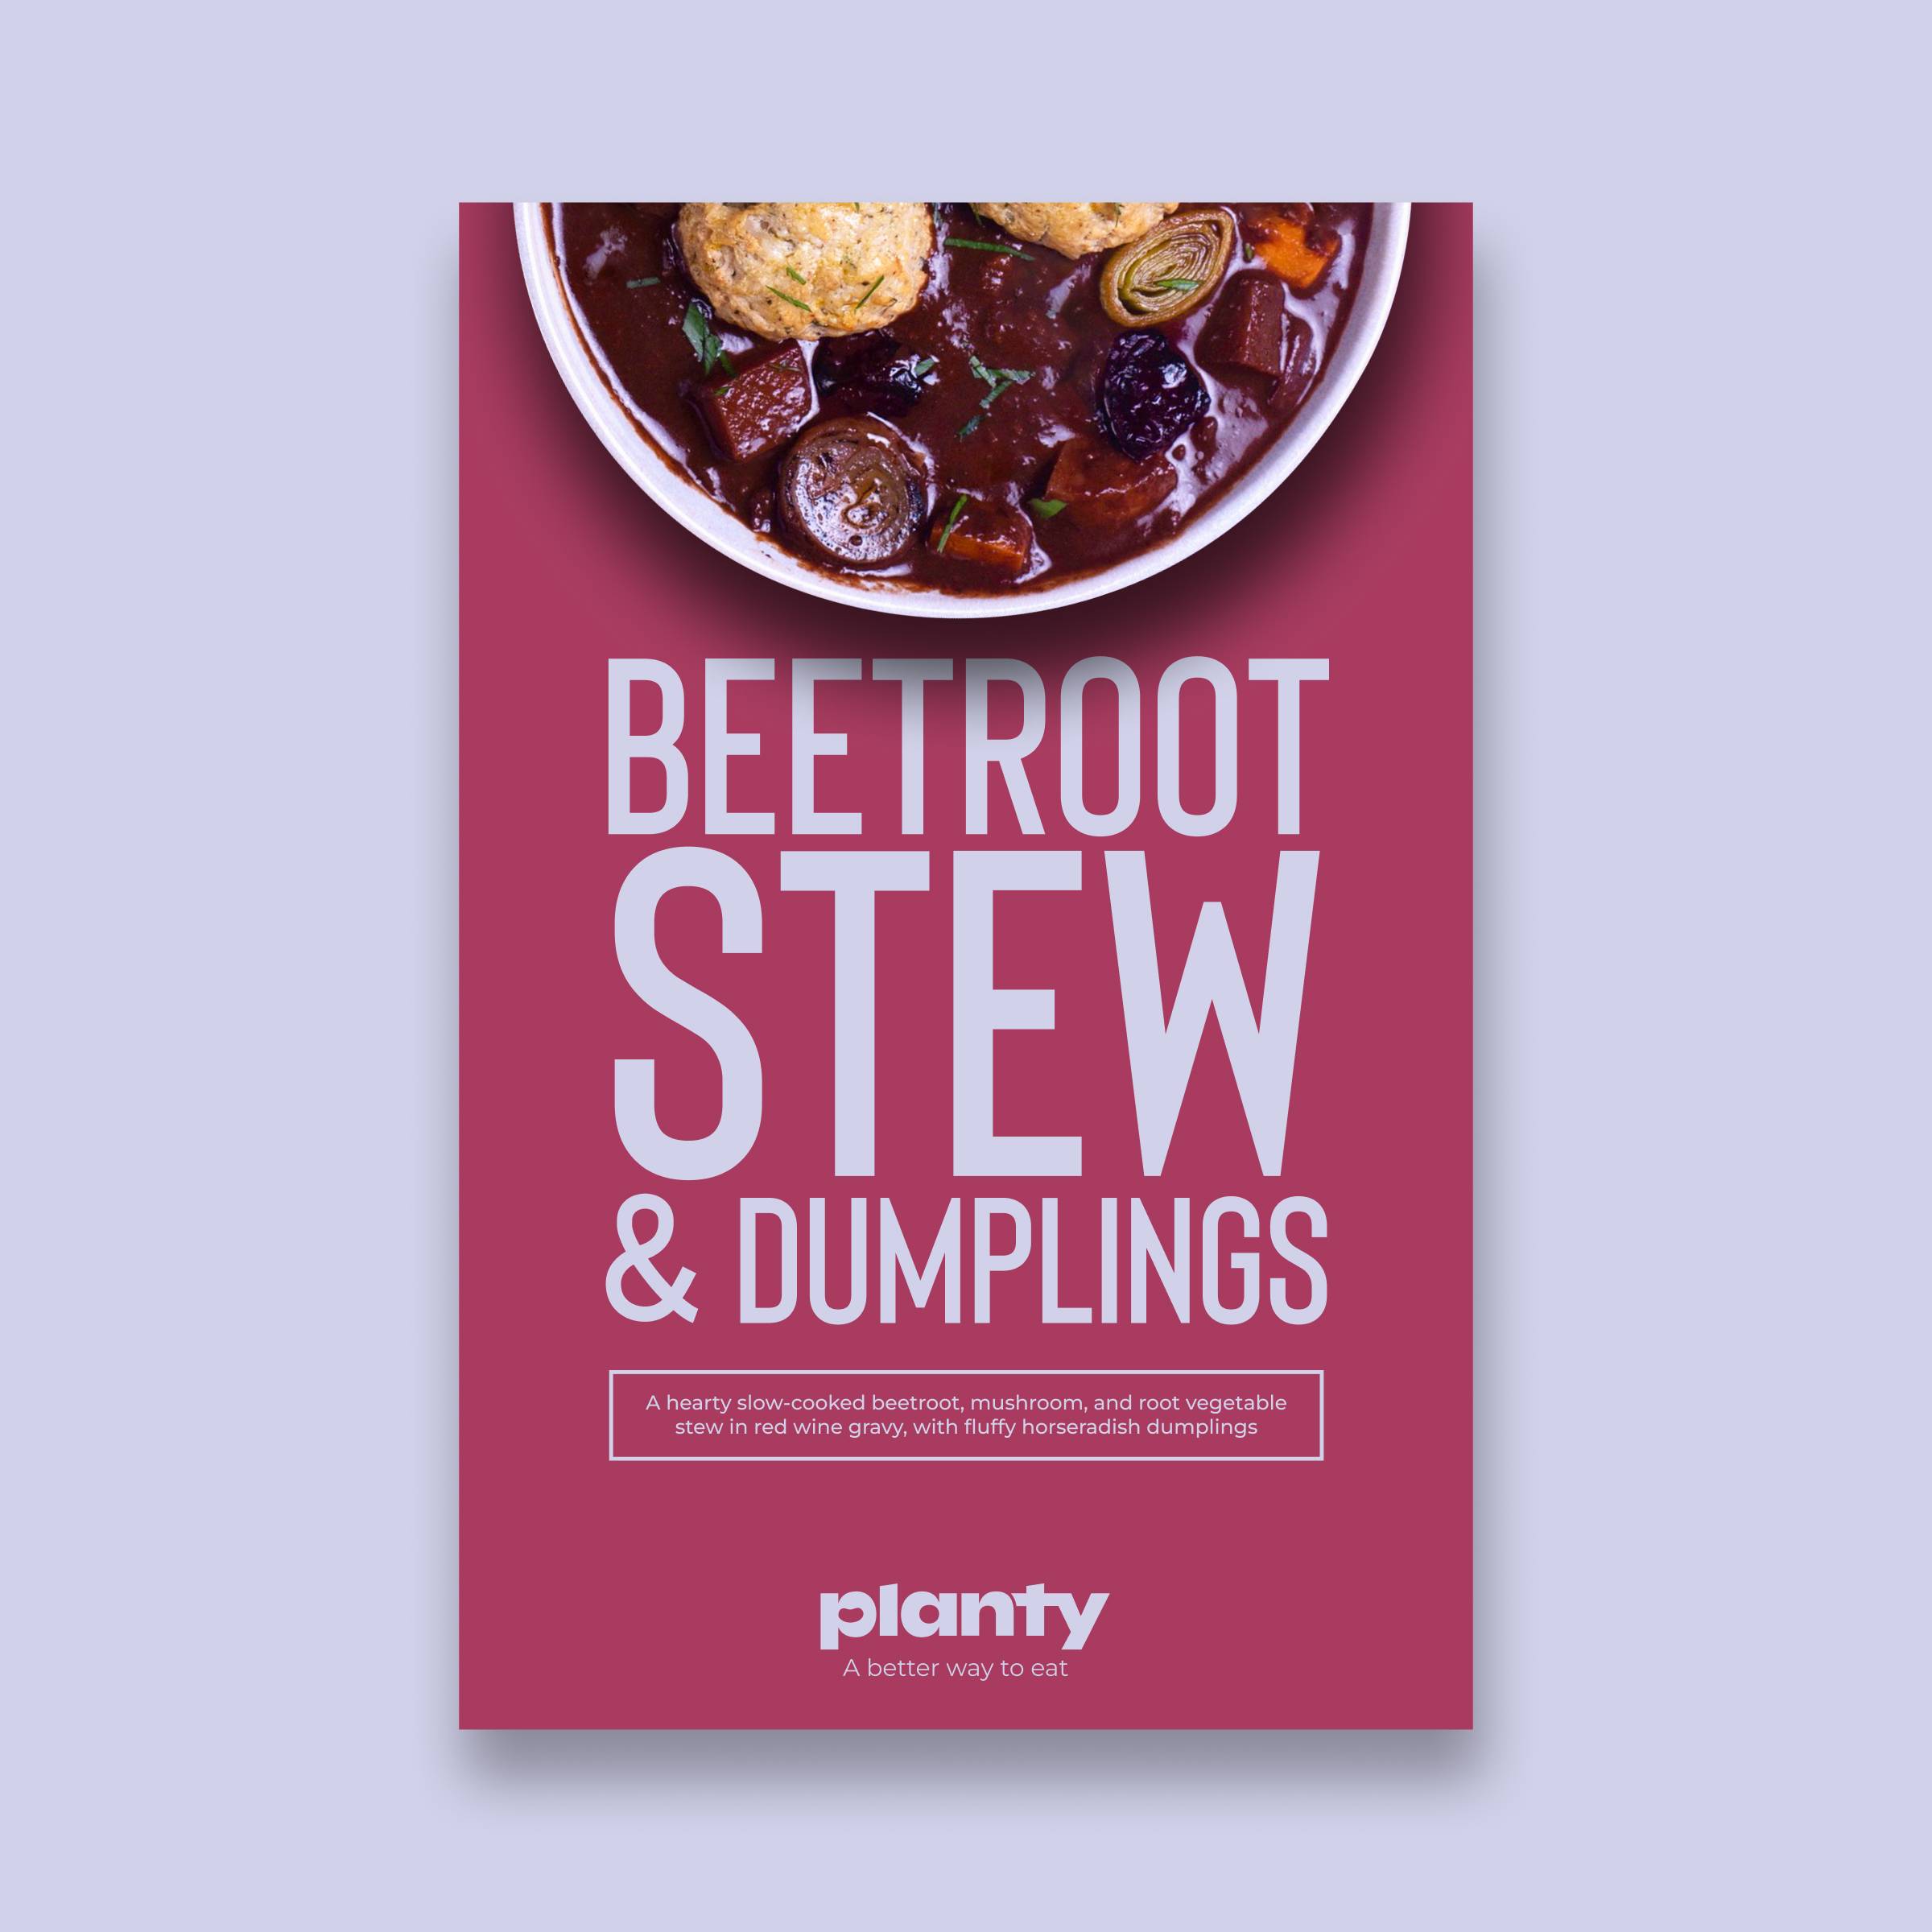 Beetroot Stew & Dumplings  image 2